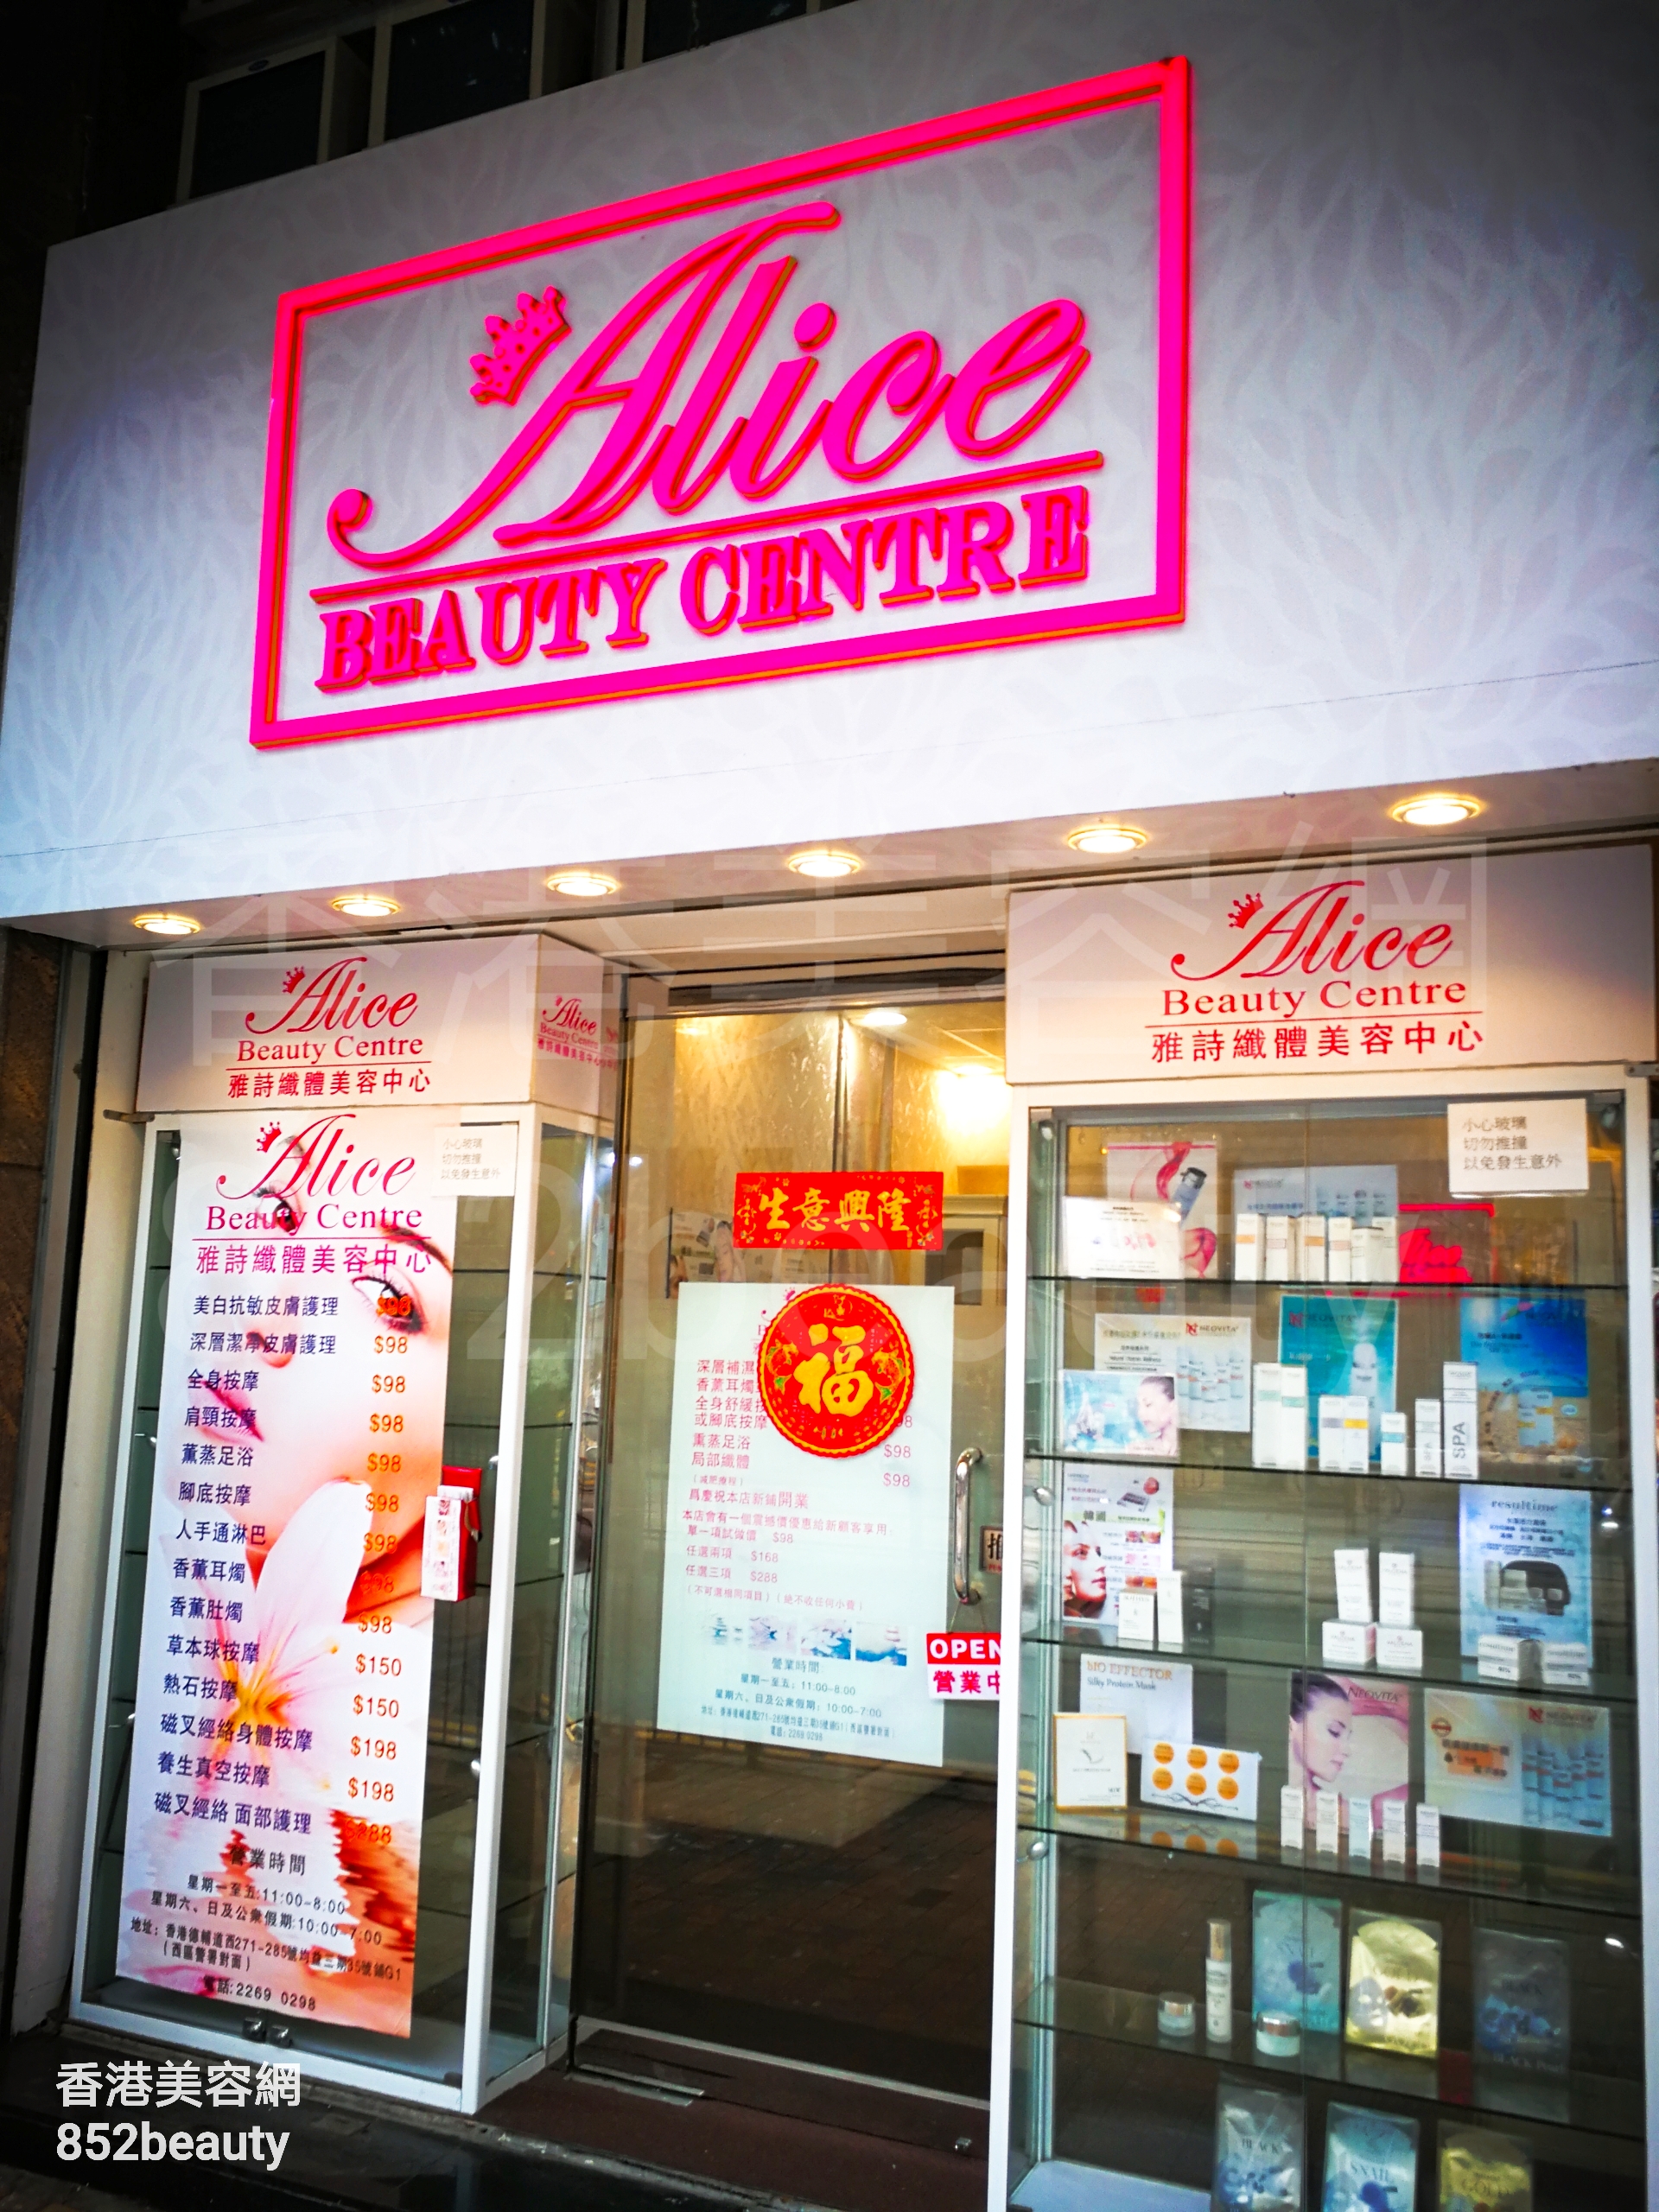 美容院 Beauty Salon: Alice beauty centre 雅詩纖體美容中心 (西營盤店)